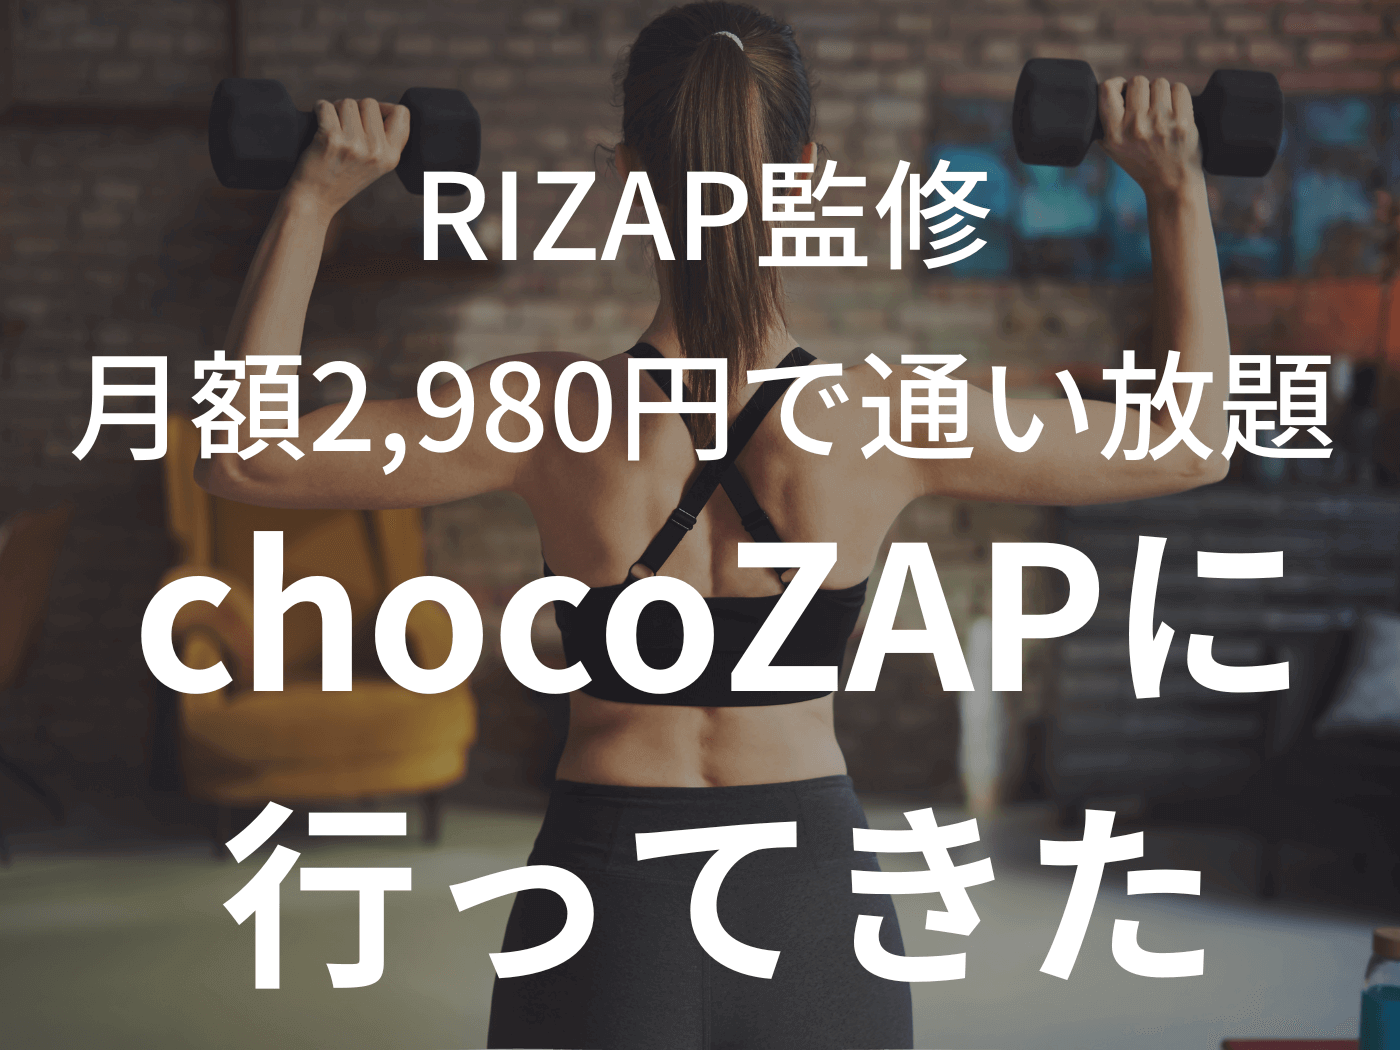 【行ってみた！】RIZAP監修のchocoZAPに行って体験したら本当にコスパ良かったのアイキャッチ画像。